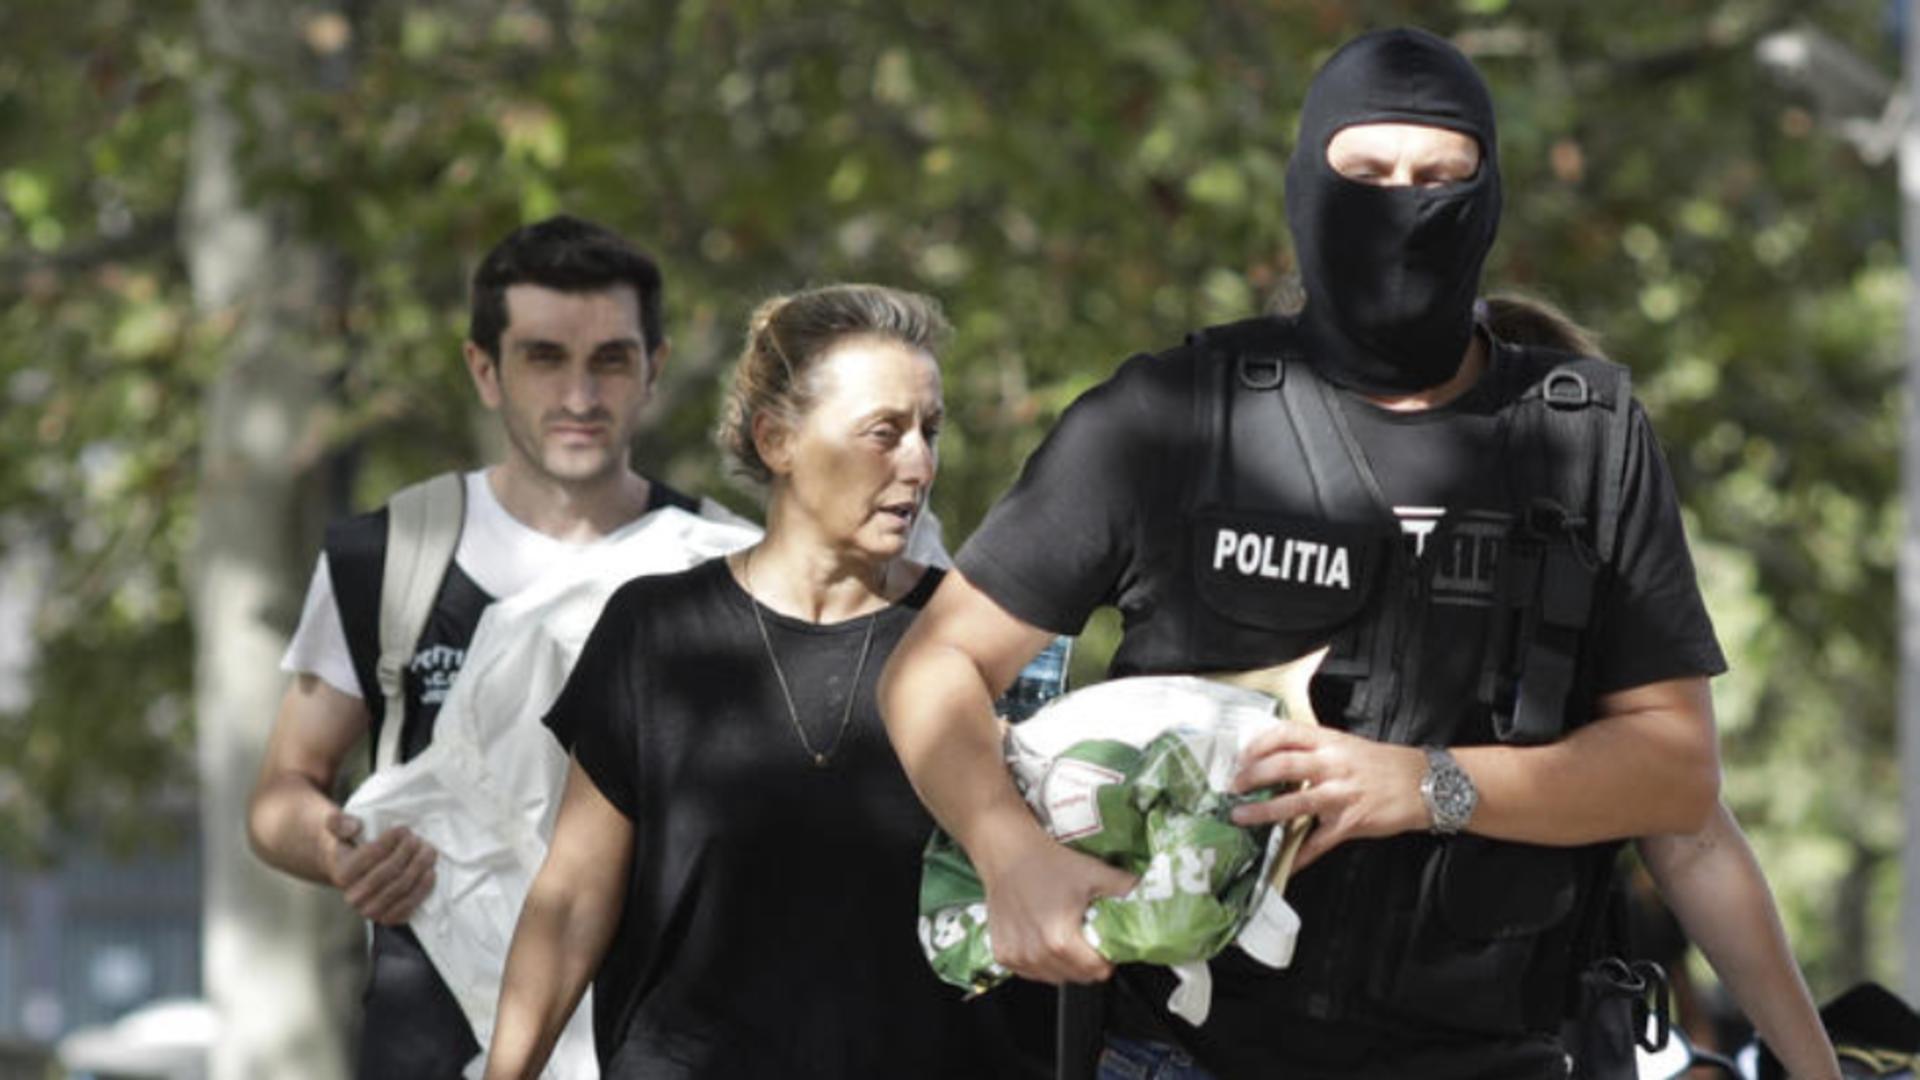 Mama lui Vlad Pascu, despre fosta iubită a drogatului: „E petardă! Va face niște prostii cât ea de mari” - STENOGRAME